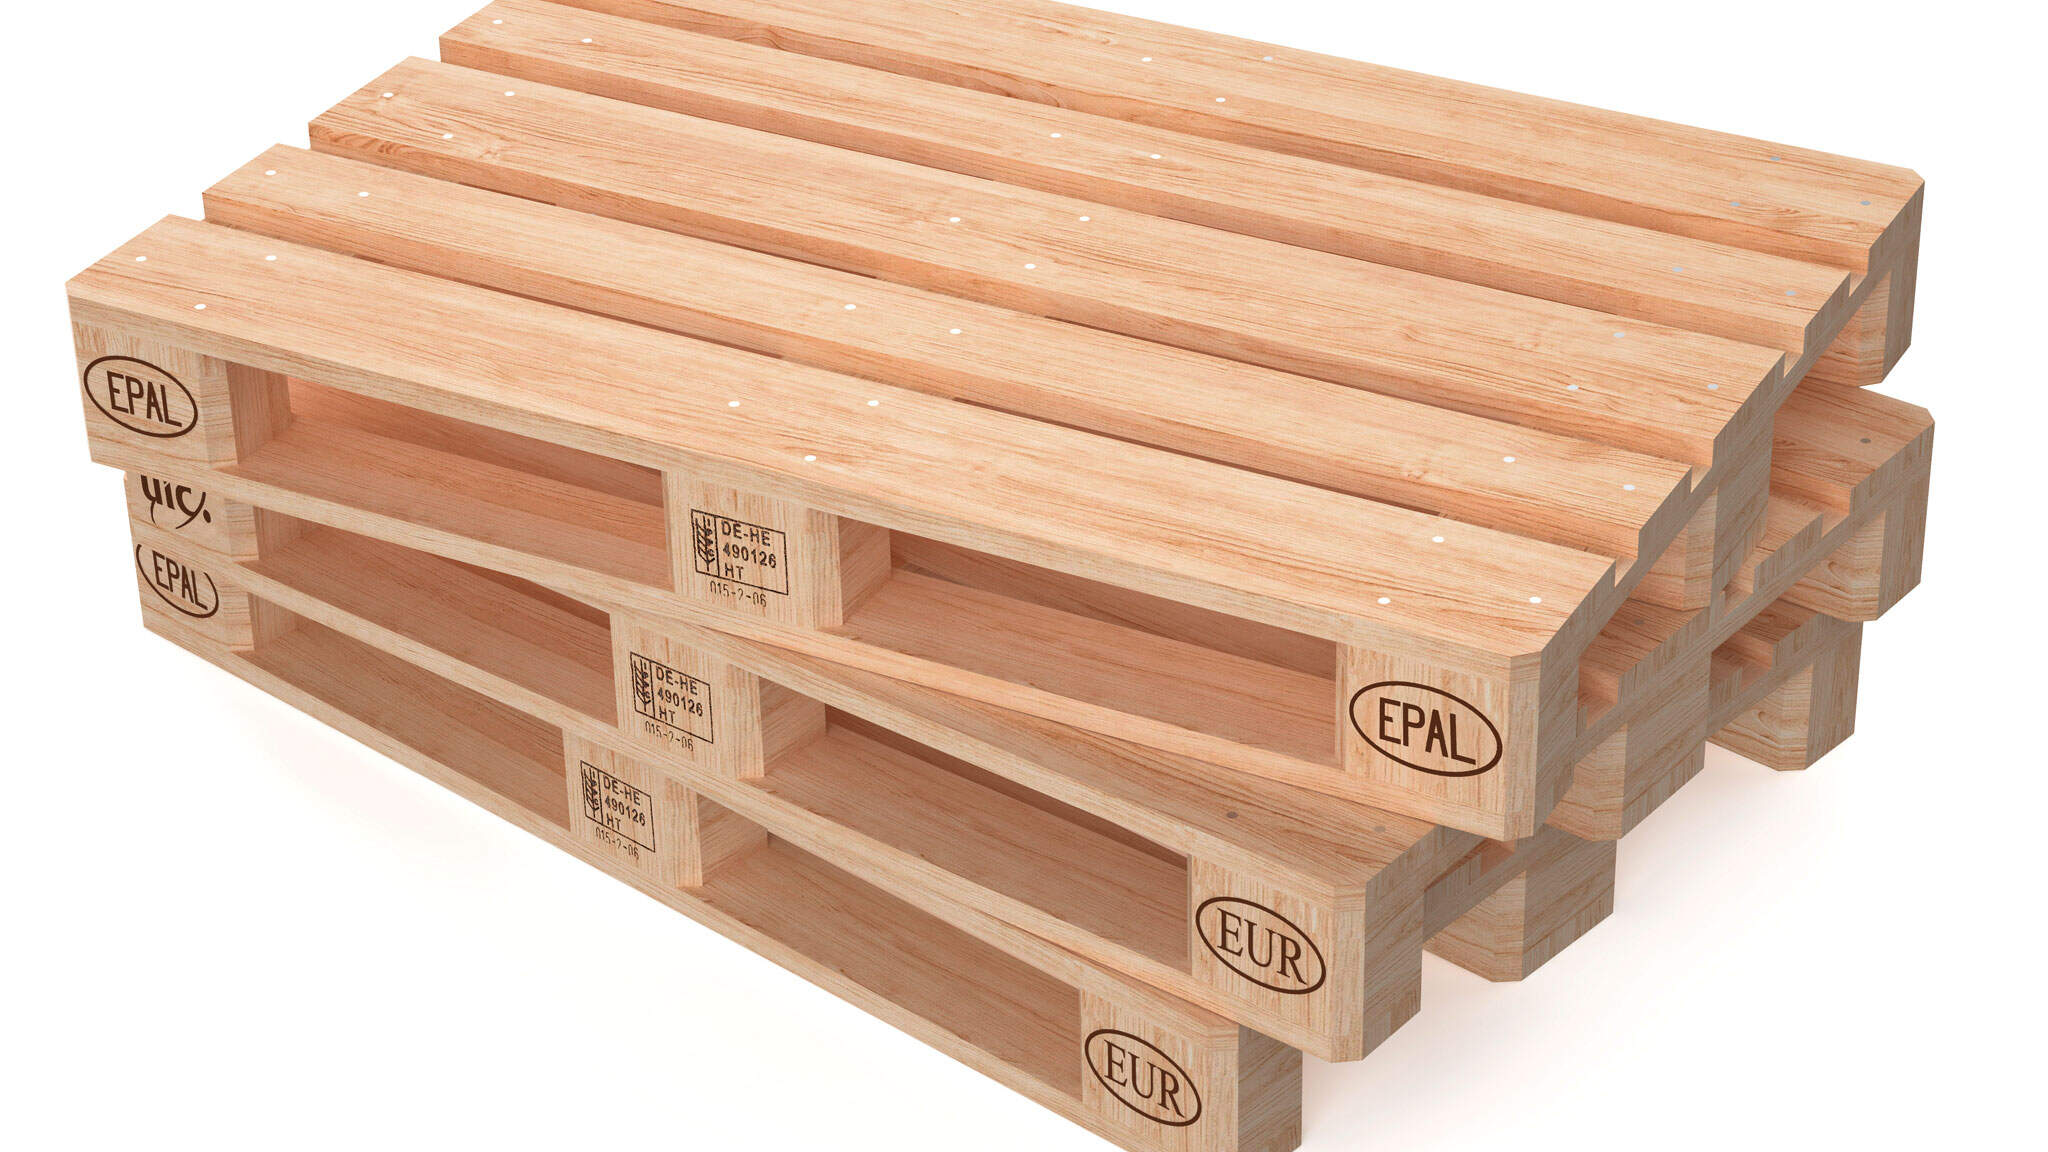 Cada euro palet consta de 9 bloques de madera, 11 tablas y 78 clavos. Tiene 1200 mm de largo, 800 mm de ancho, 144 mm de alto y un peso de 22 kg.